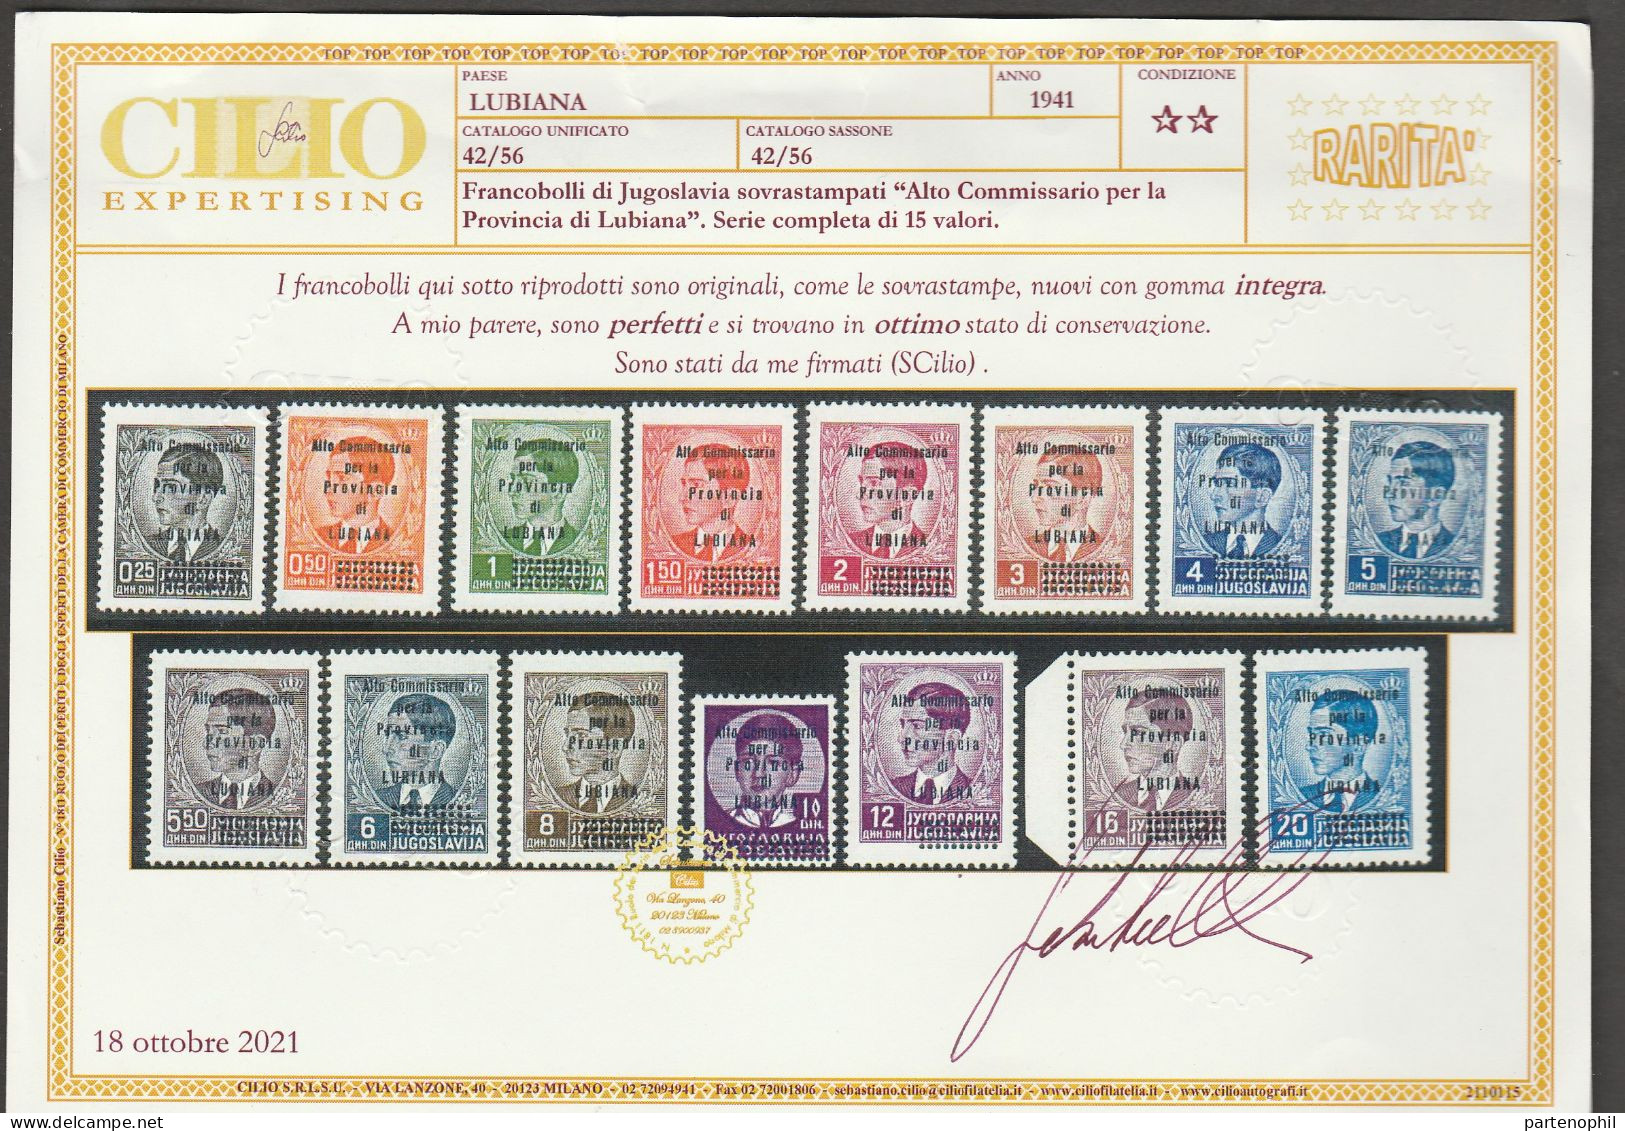 Lotto 273 Lubiana 1941 - Francobolli Di Jugoslavia Soprastampati In Azzurro “Alto Commissariato Per La Provincia Di MNH - Lubiana